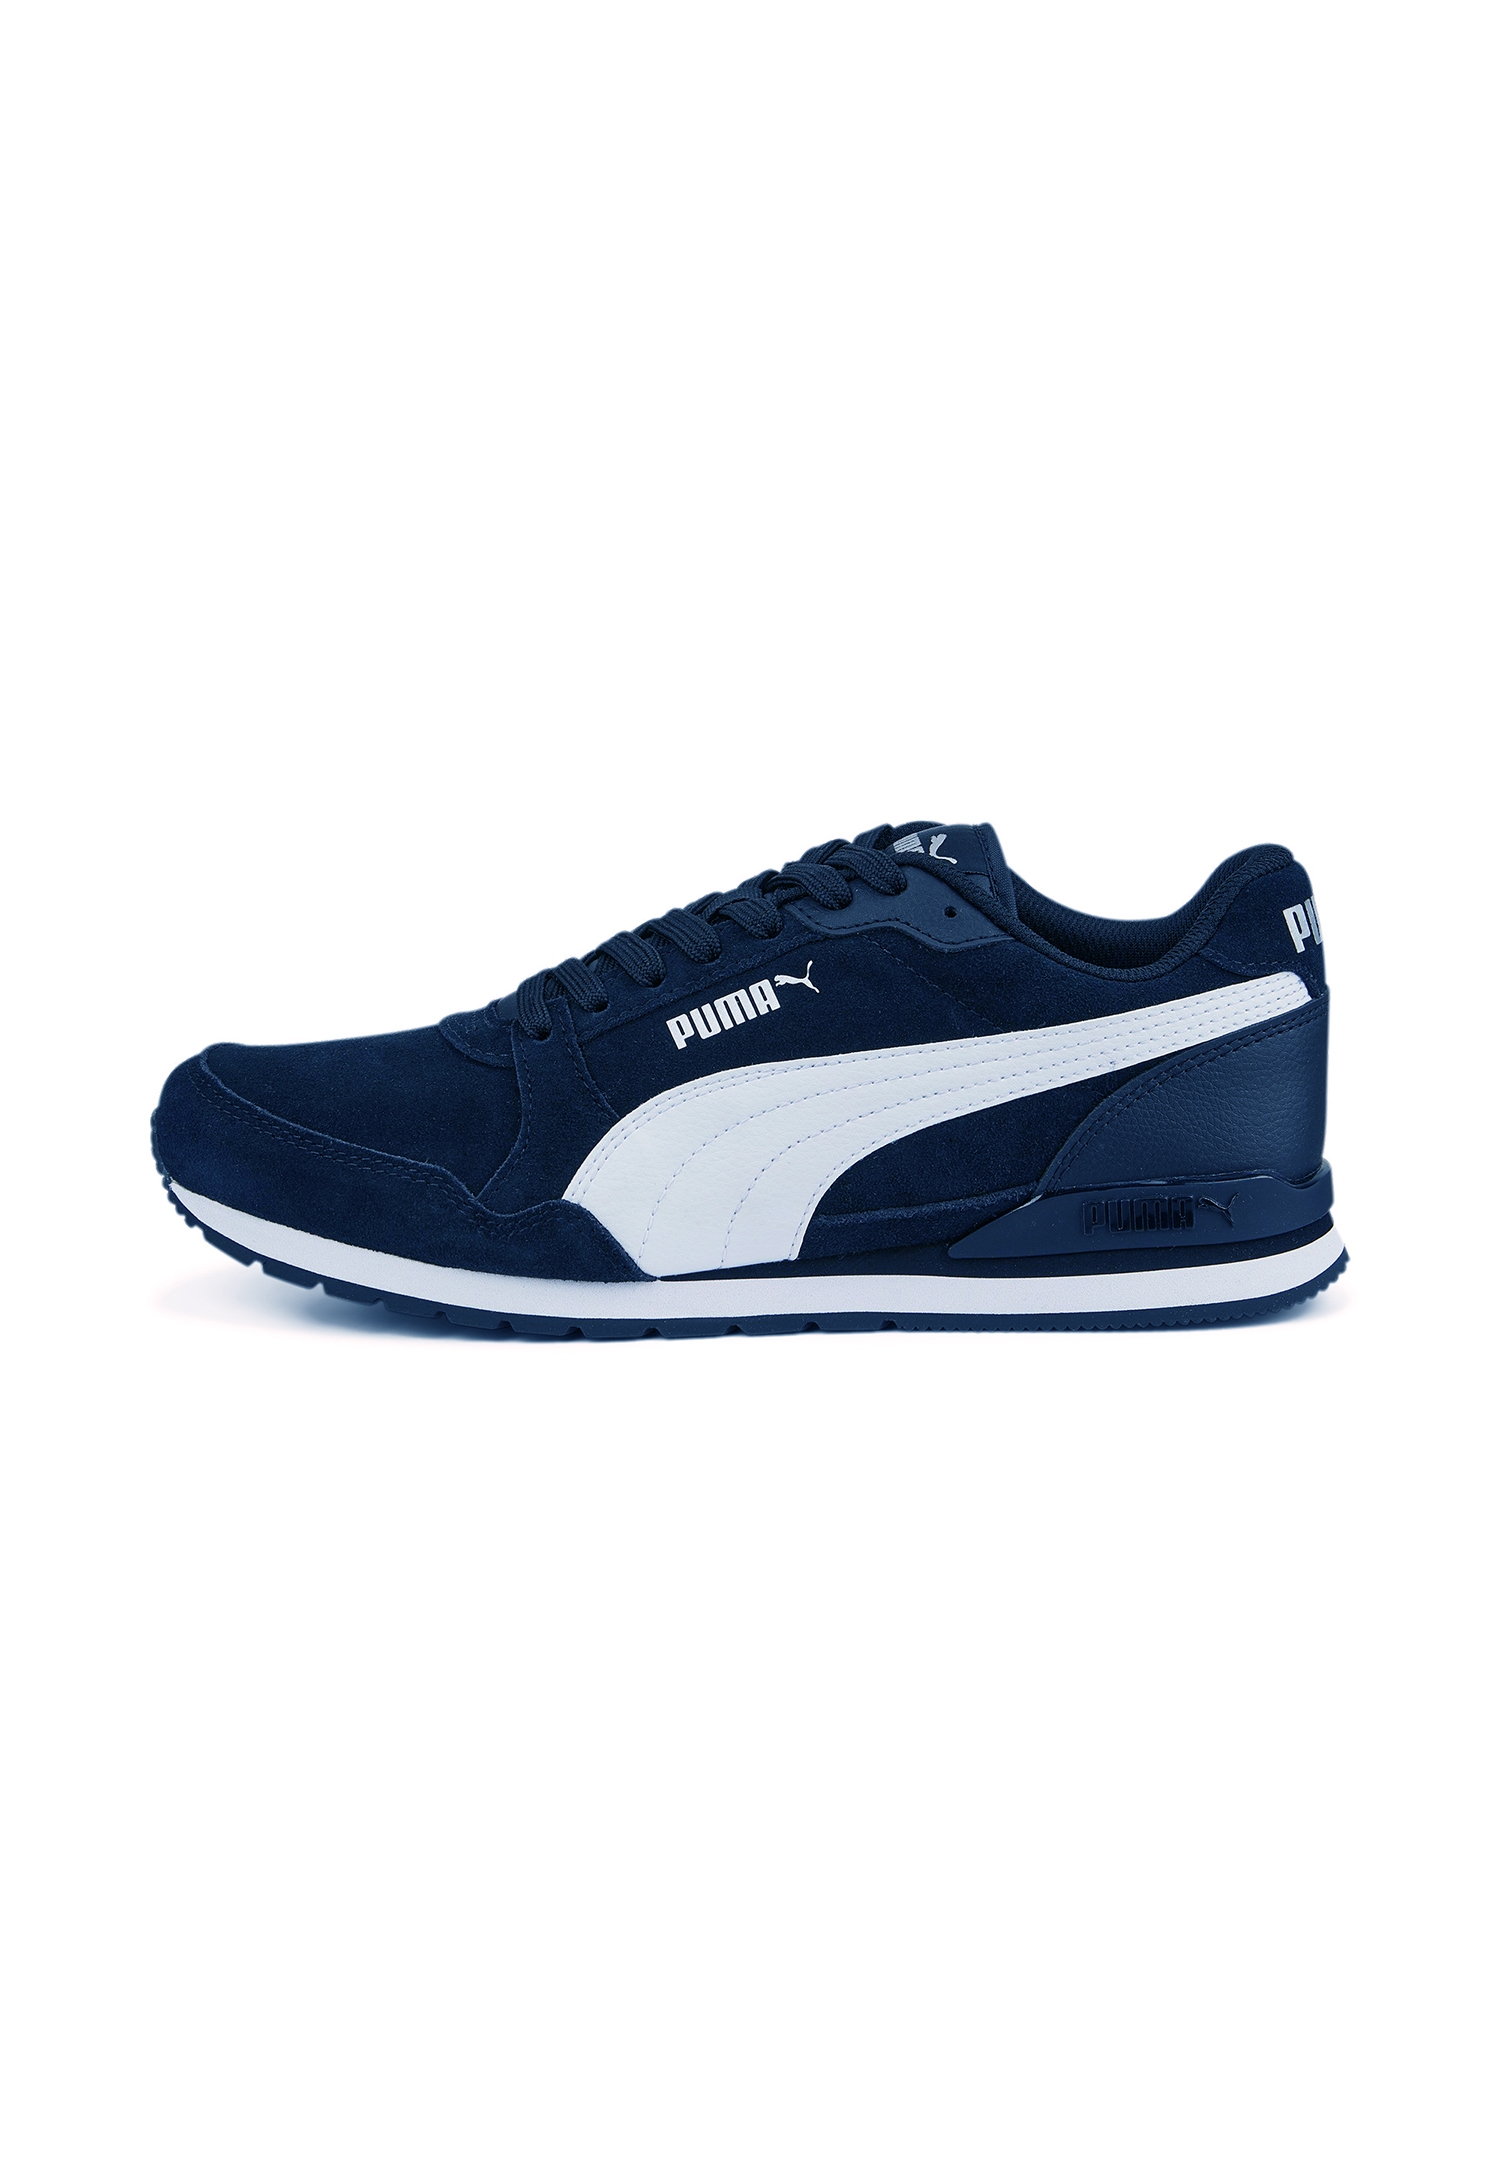 Puma ST Runner v3 SD Sneaker Schuhe 387646 03 Herren Schuhe blau